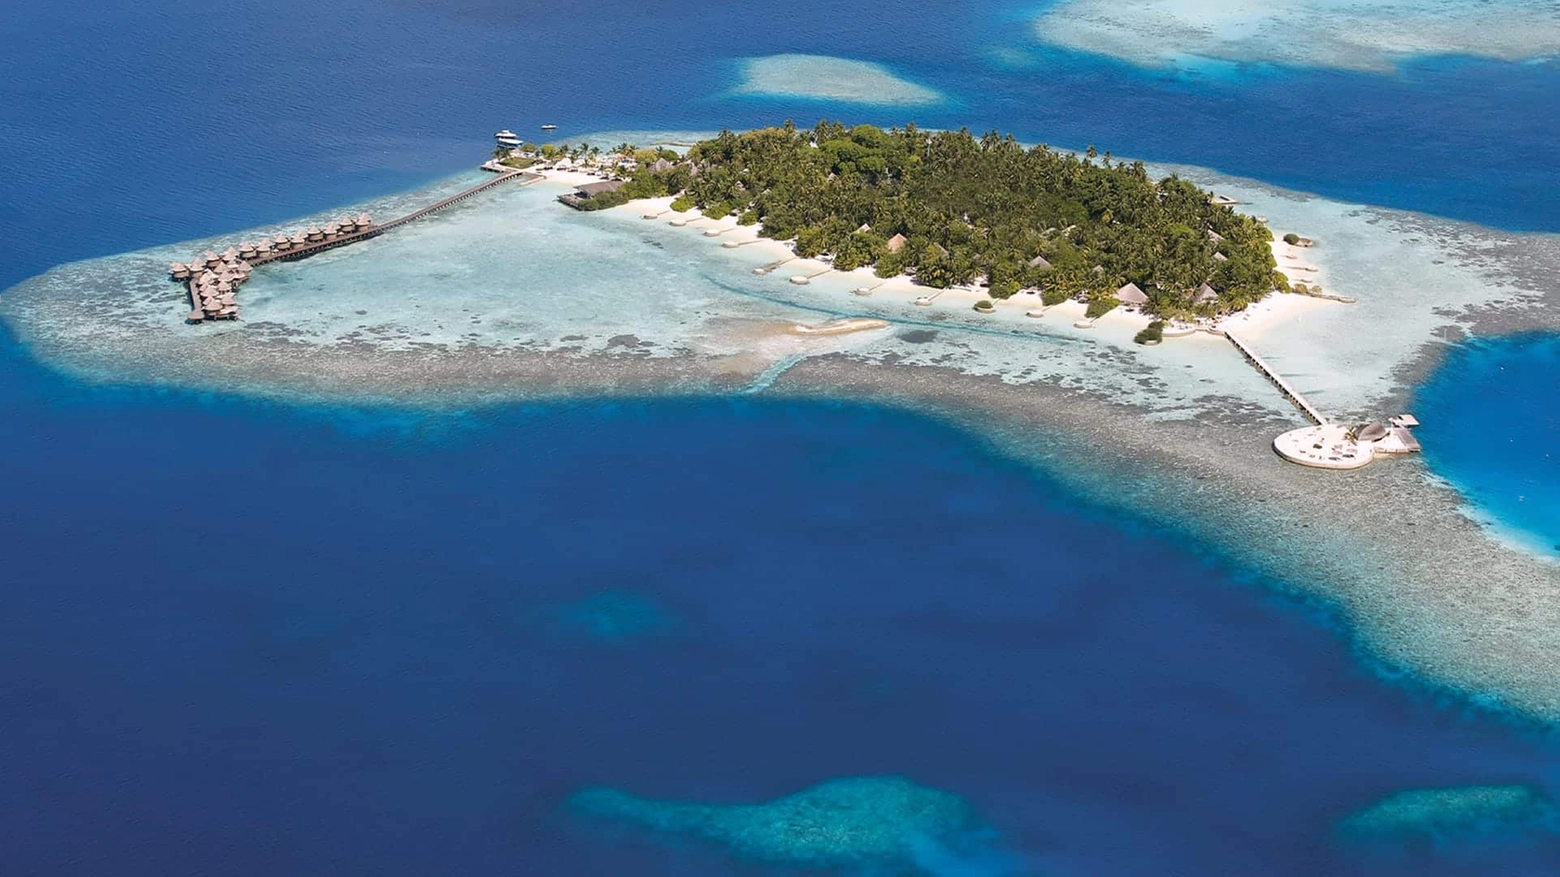 Nika Island il 2 aprile sarà proclamata prima "isola gentile" al mondo